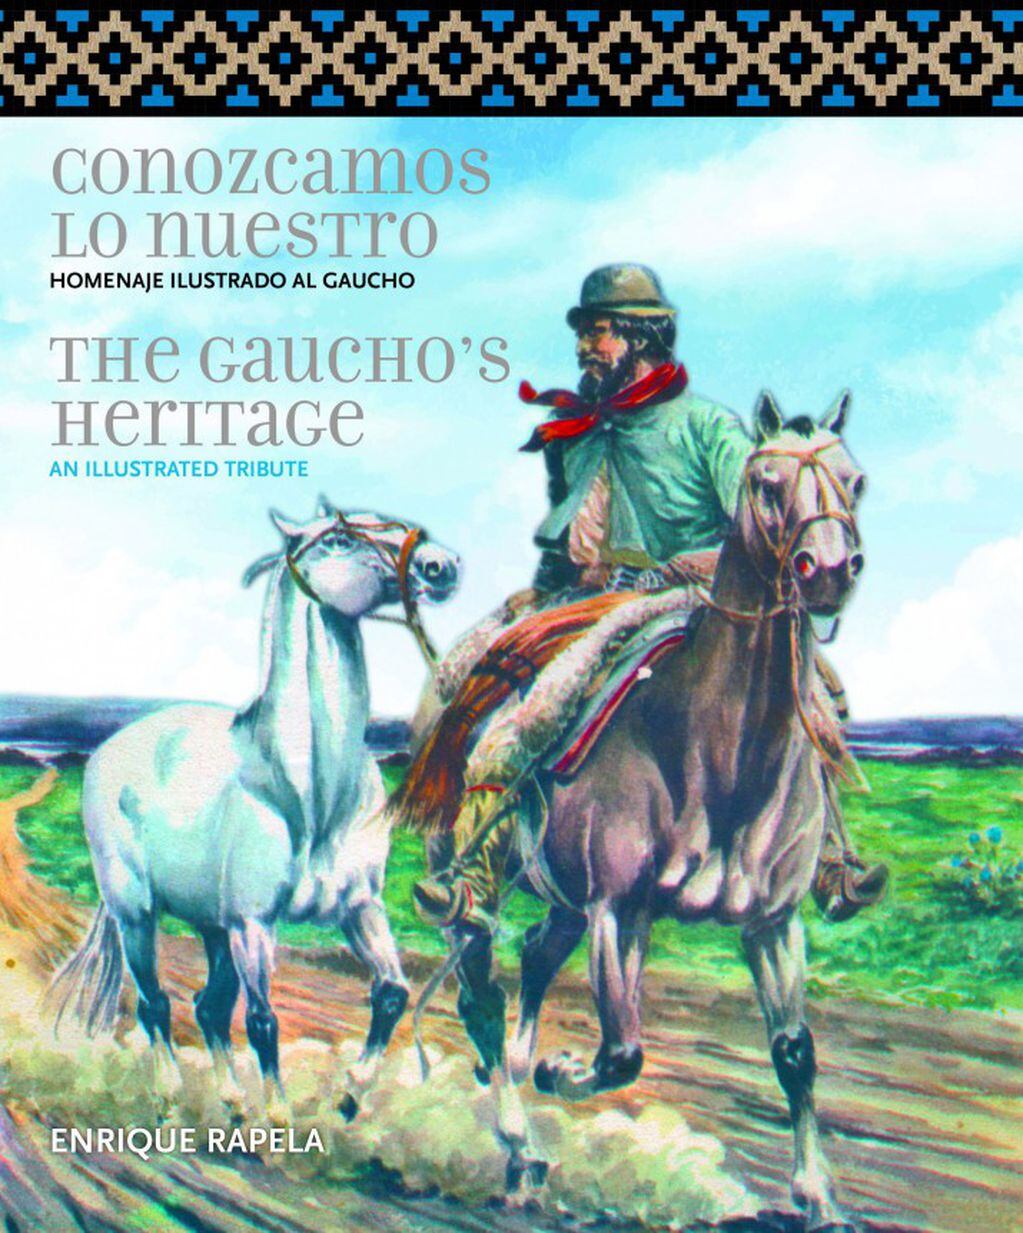 "Conozcamos lo nuestro", edición bilingüe, fue editada por El Ateneo en 2020. 